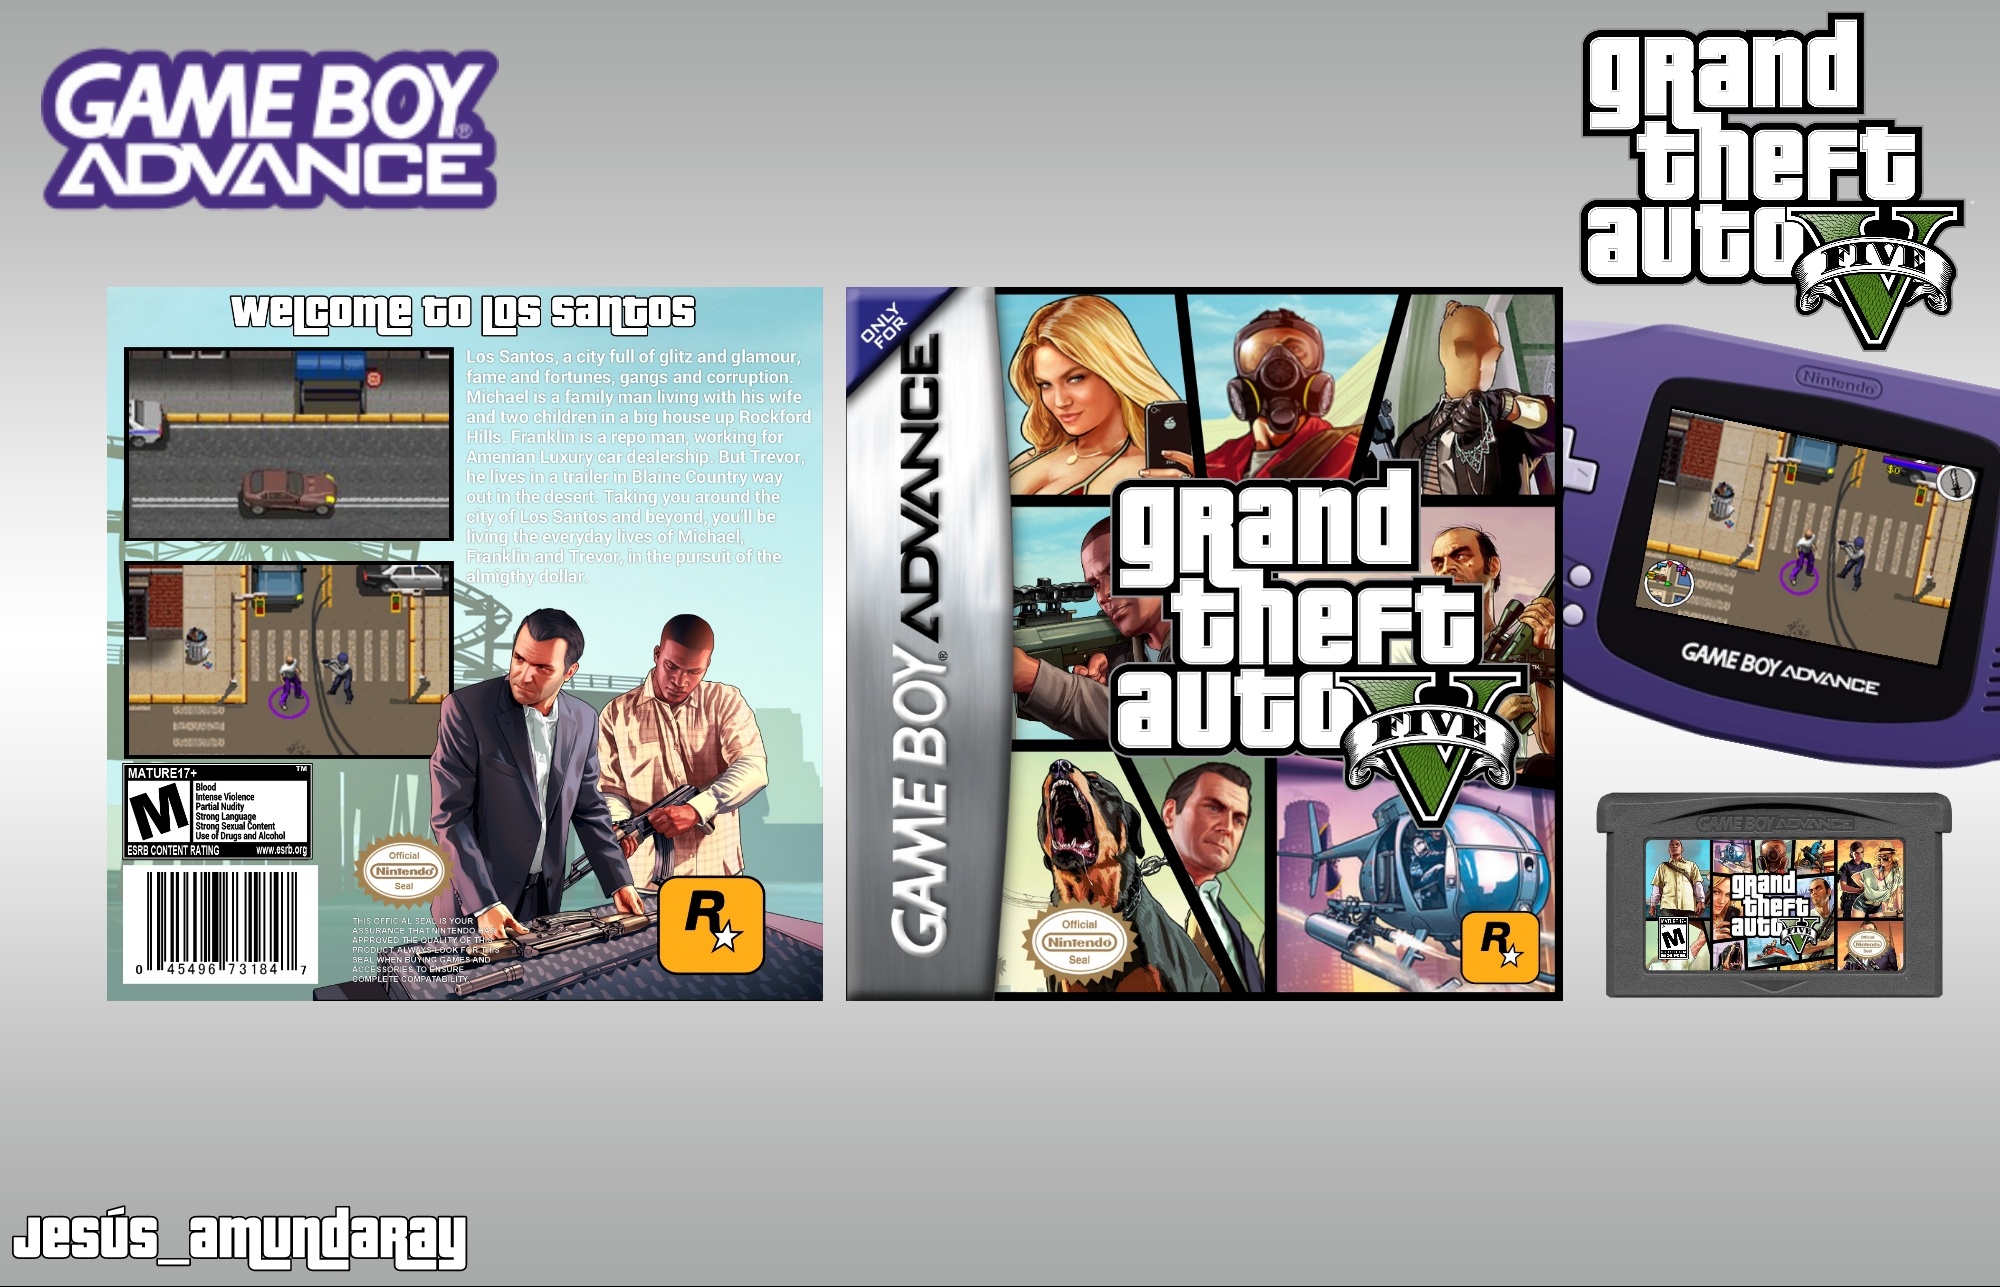 Grand Theft Auto V Advance Edition box cover